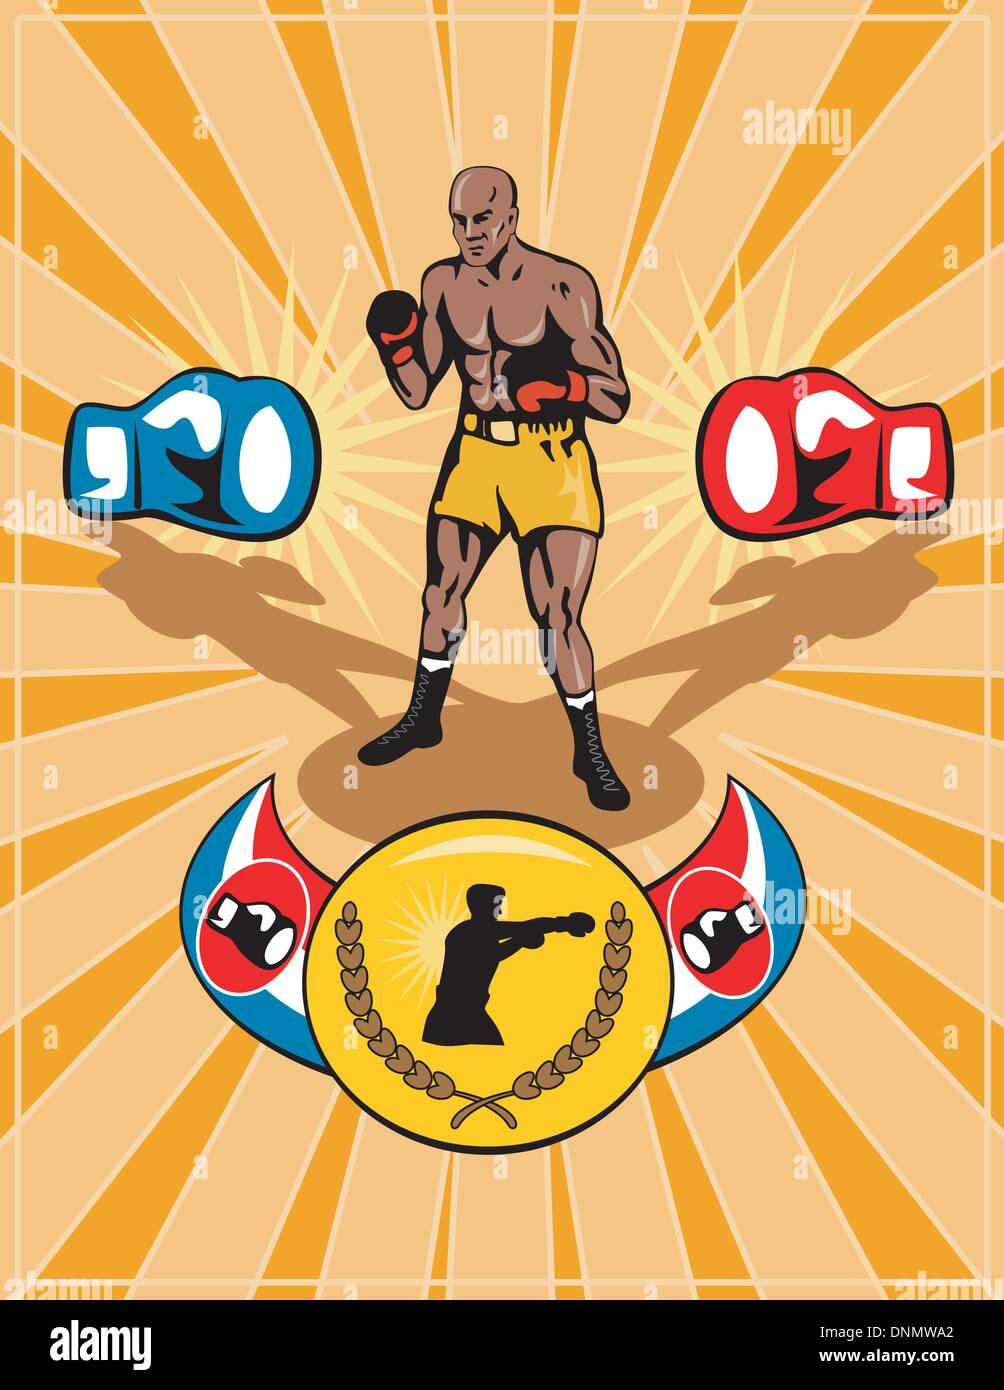 Abbildung eines Boxers posiert mit Handschuhen und Championship-Gürtel-retro-Stil Stock Vektor